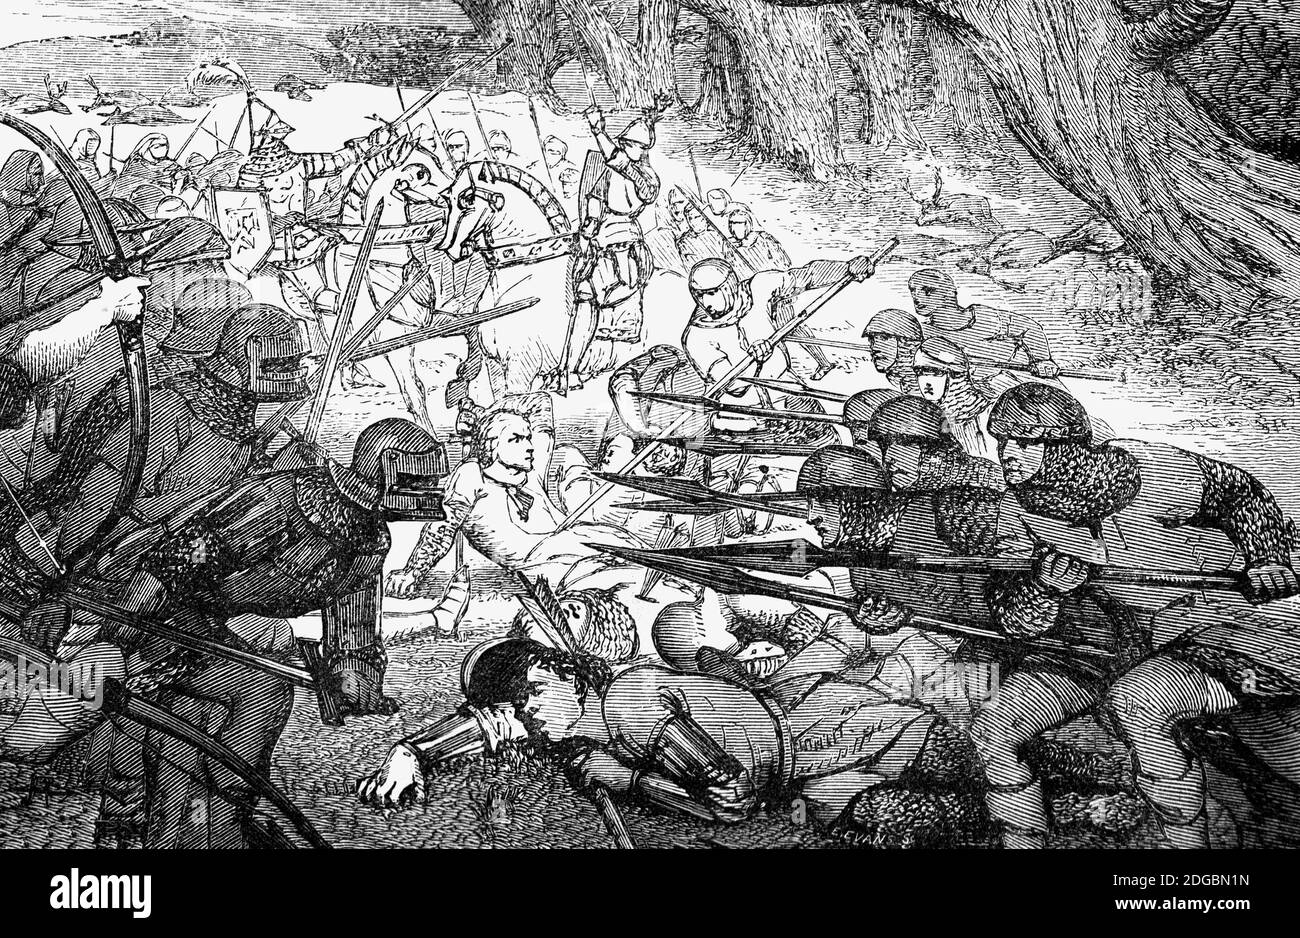 Une illustration de « la ballade de Chevy Chase » qui raconte l'histoire d'une grande partie de chasse sur des terres de chasse (ou poursuite) dans les collines de Cheviot, dans le Northumberland, à la frontière anglo-écossaise. La chasse menée par Percy, le comte anglais de Northumberland, avait été interdite par le comte écossais Douglas qui l'a interprétée comme une invasion de l'Écosse. En réponse, il a attaqué, provoquant une bataille sanglante après laquelle seulement 110 personnes ont survécu. La genèse de la ballade est inconnue, mais peut avoir ses racines dans la bataille d'Otterburn de 1388. Banque D'Images